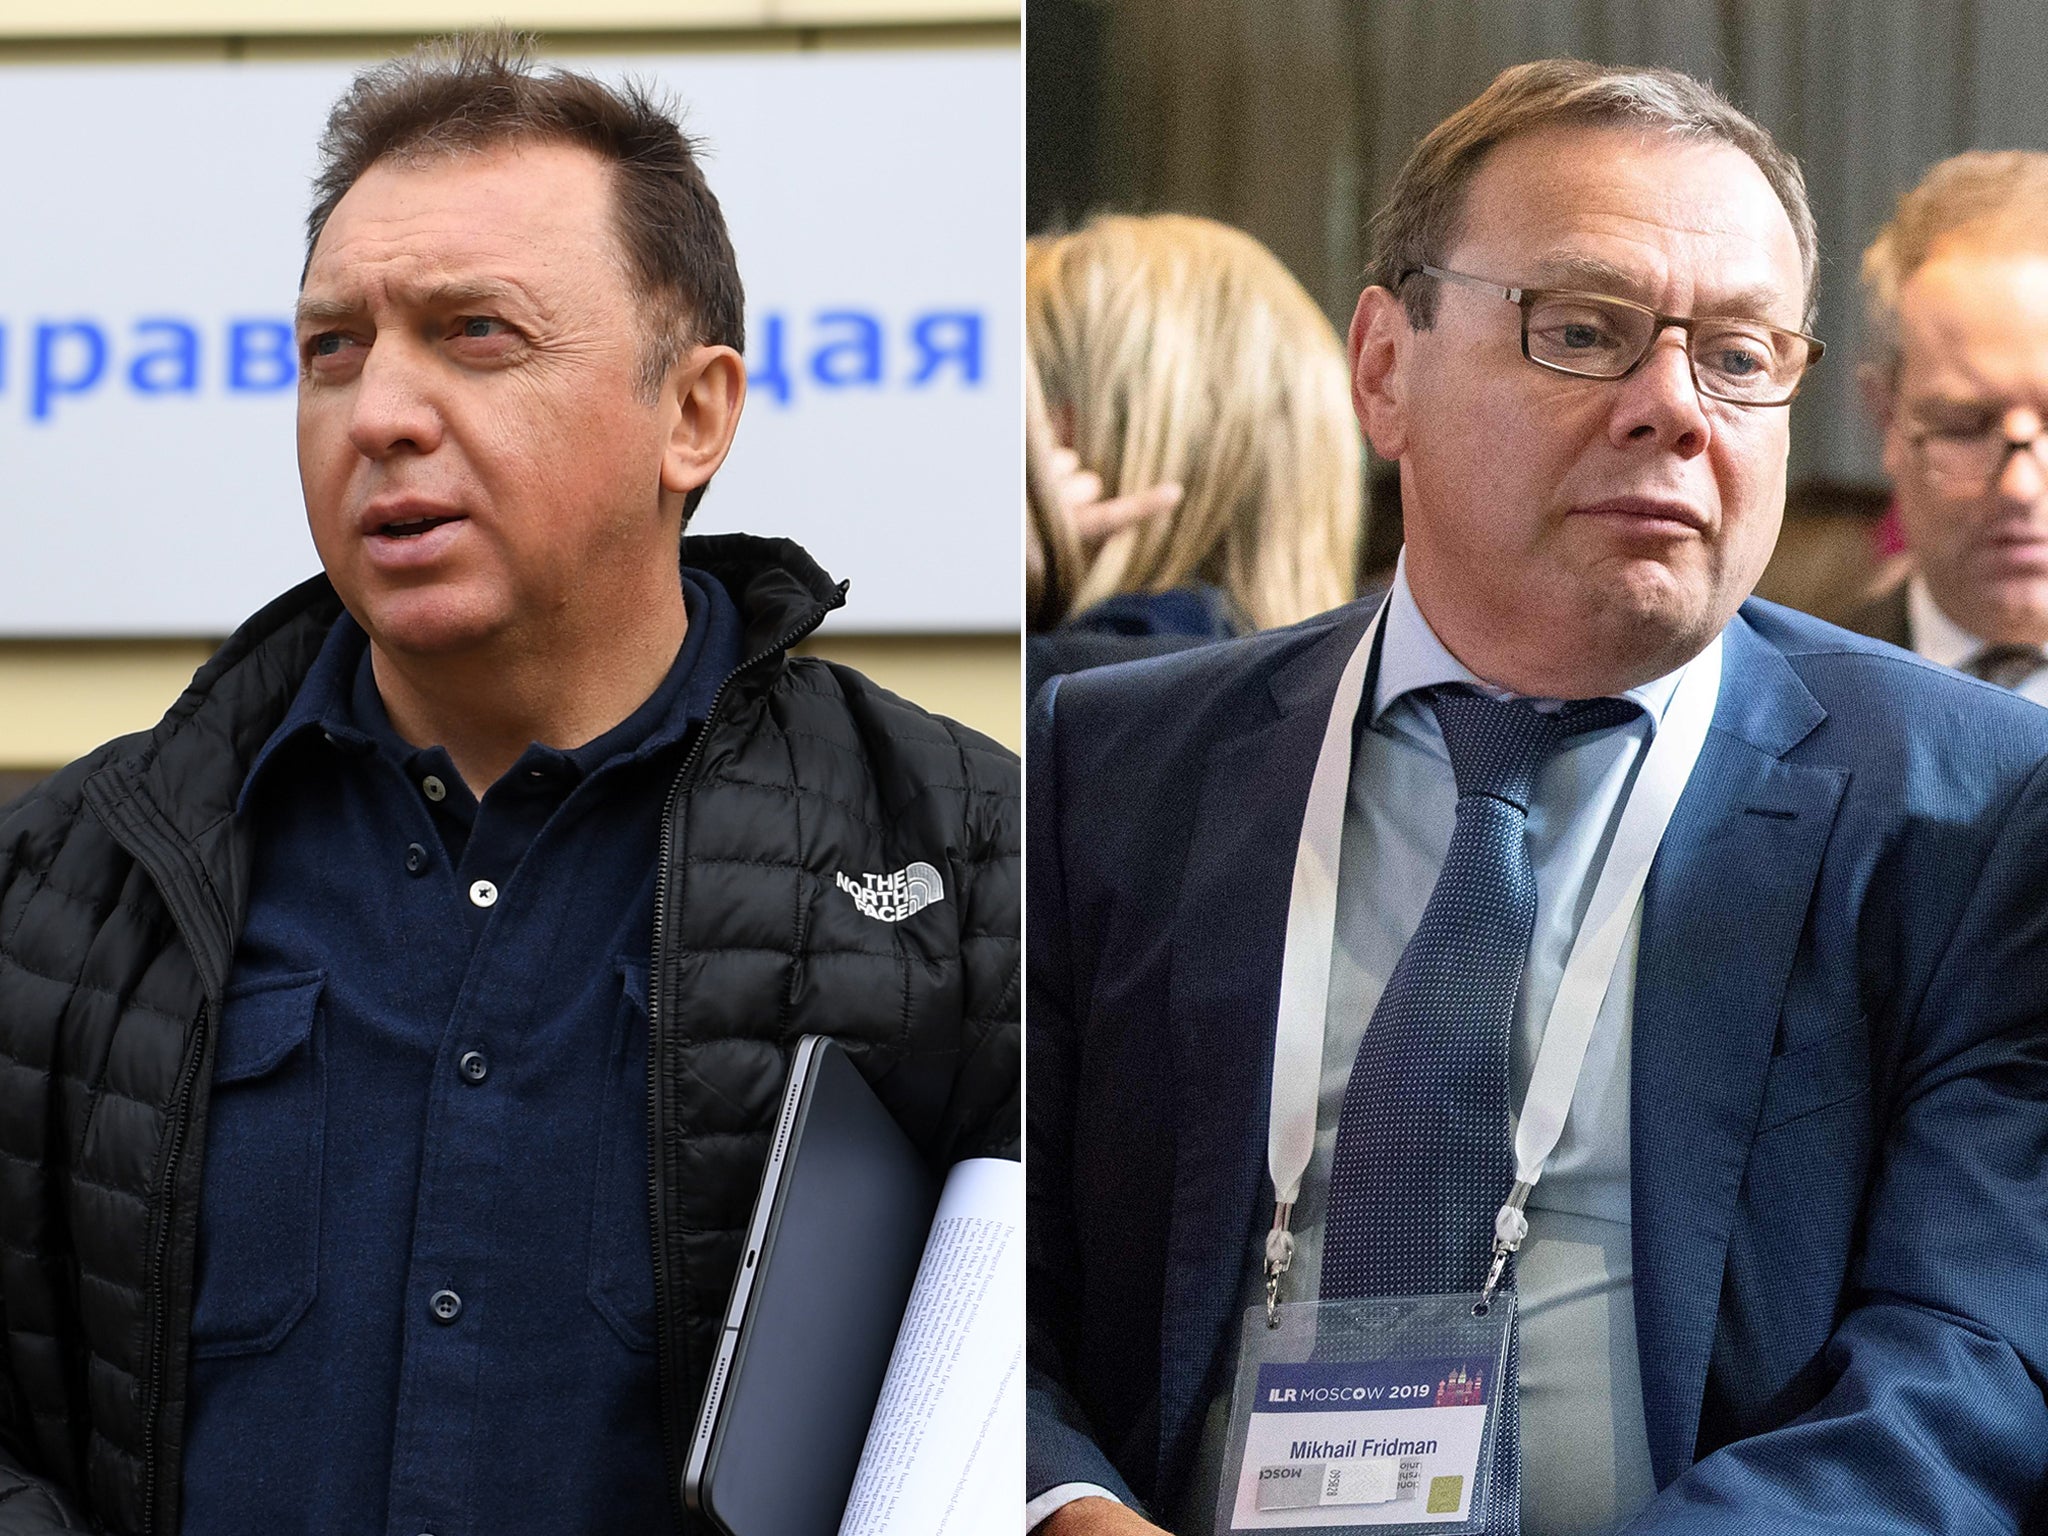 Oleg Deripaska (left) and Mikhail Fridman, Russia’s top businessmen, have spoken against the invasion of Ukraine